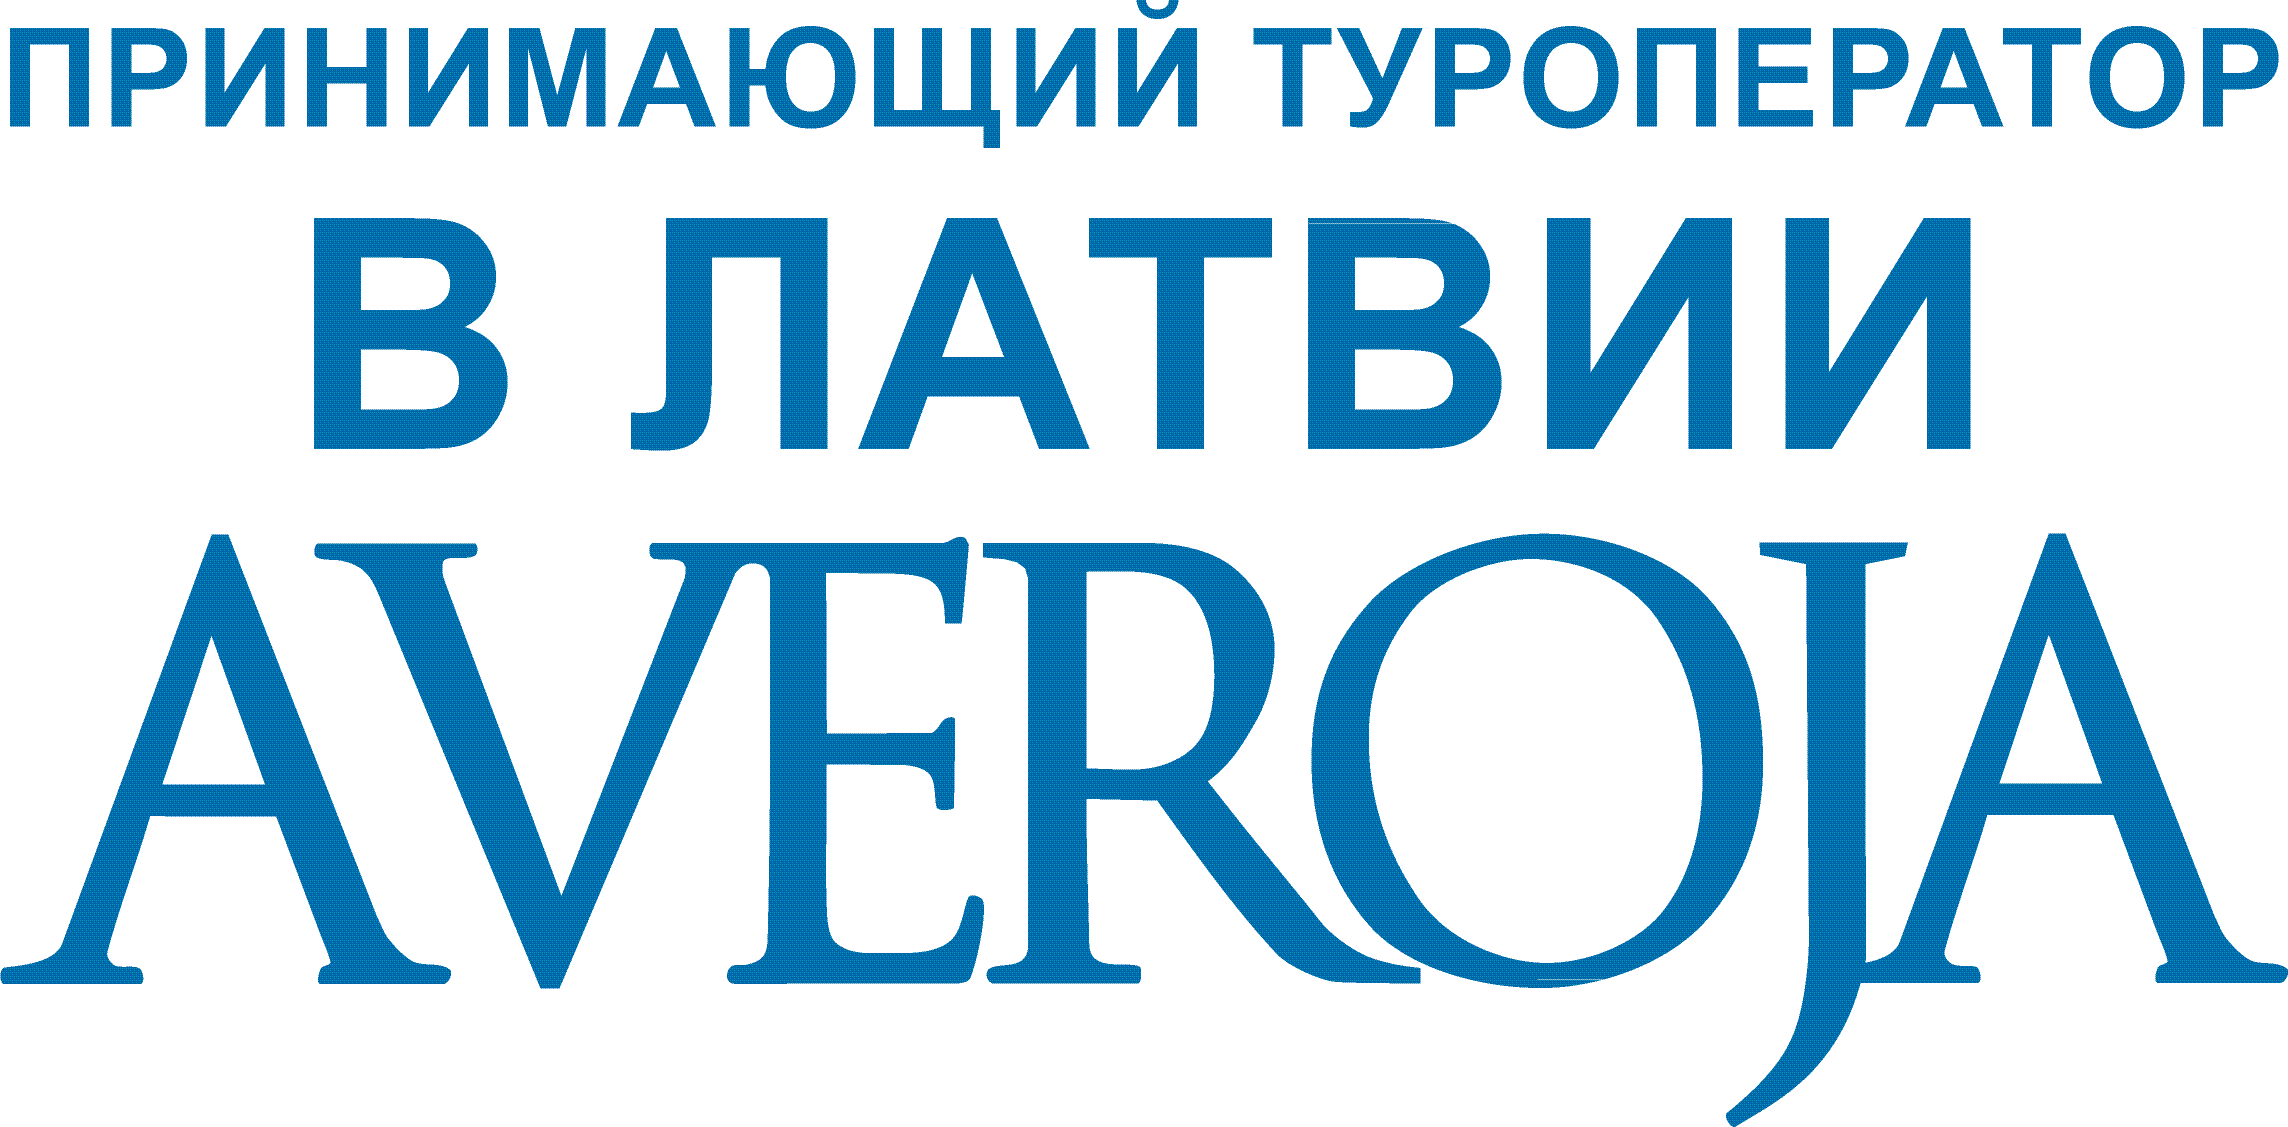 «Авероя» принимающий туроператор в Латвии